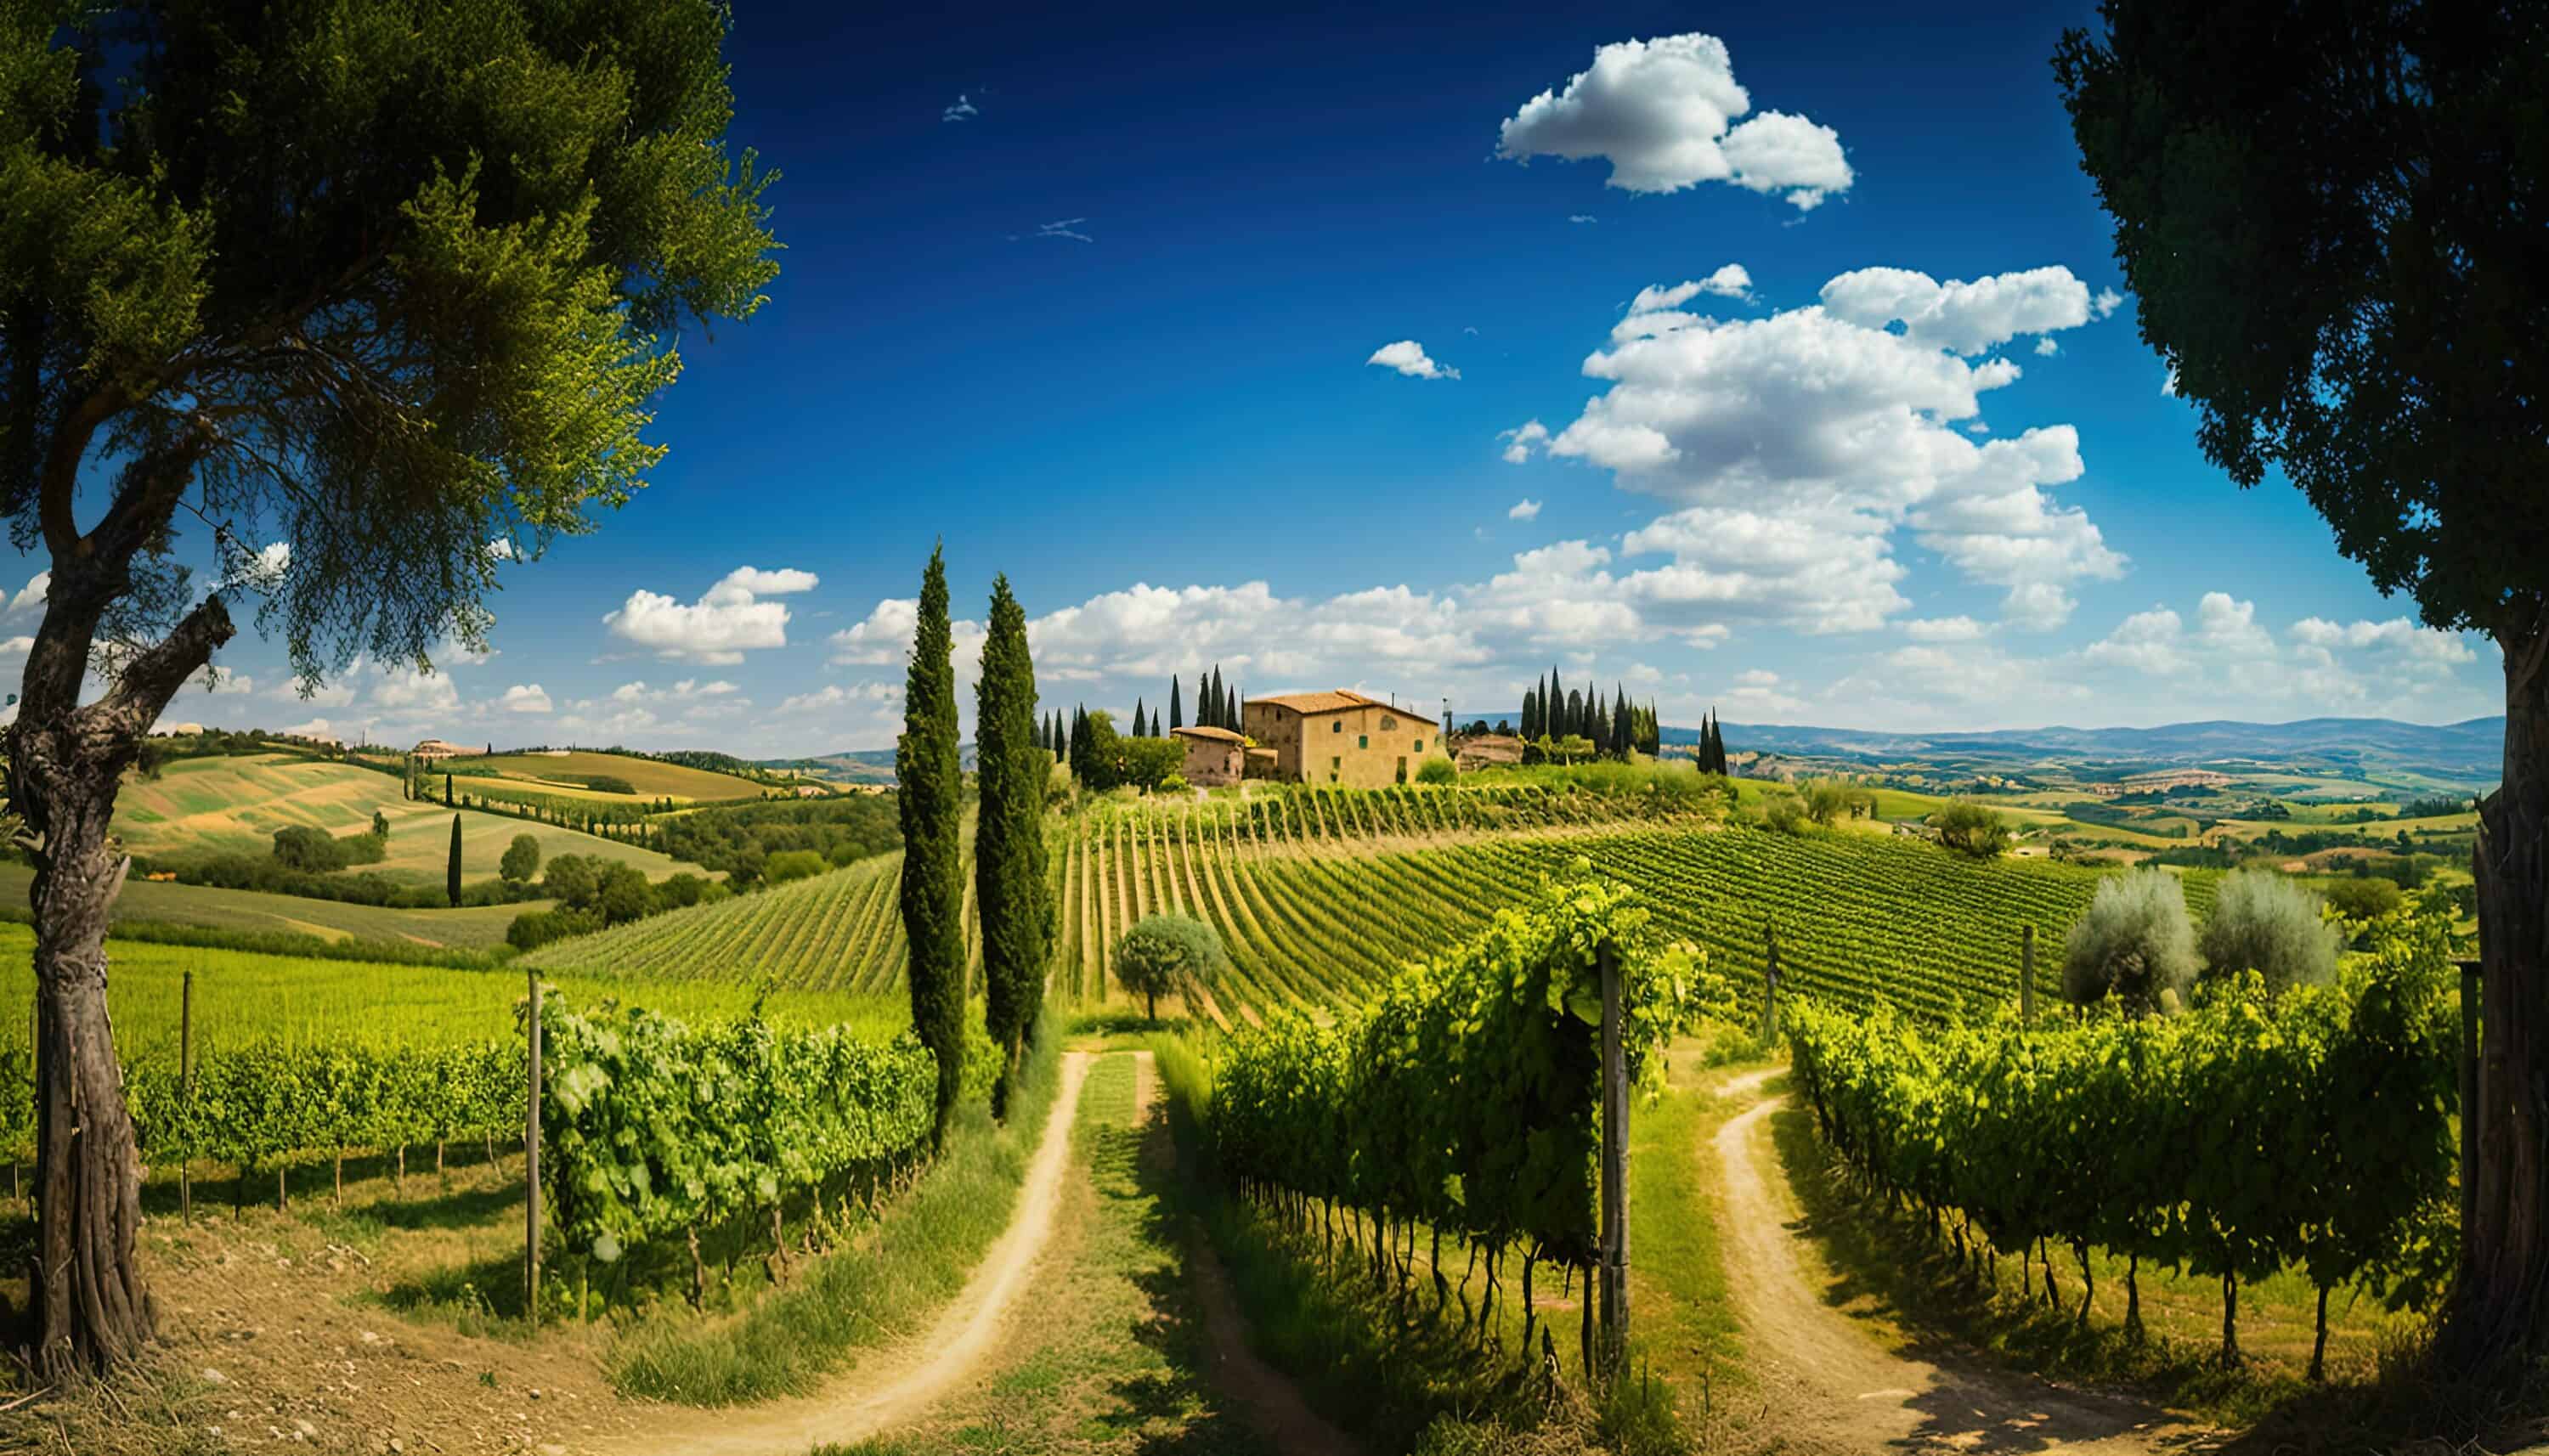 Vineyard in Tuscany, Italy.
